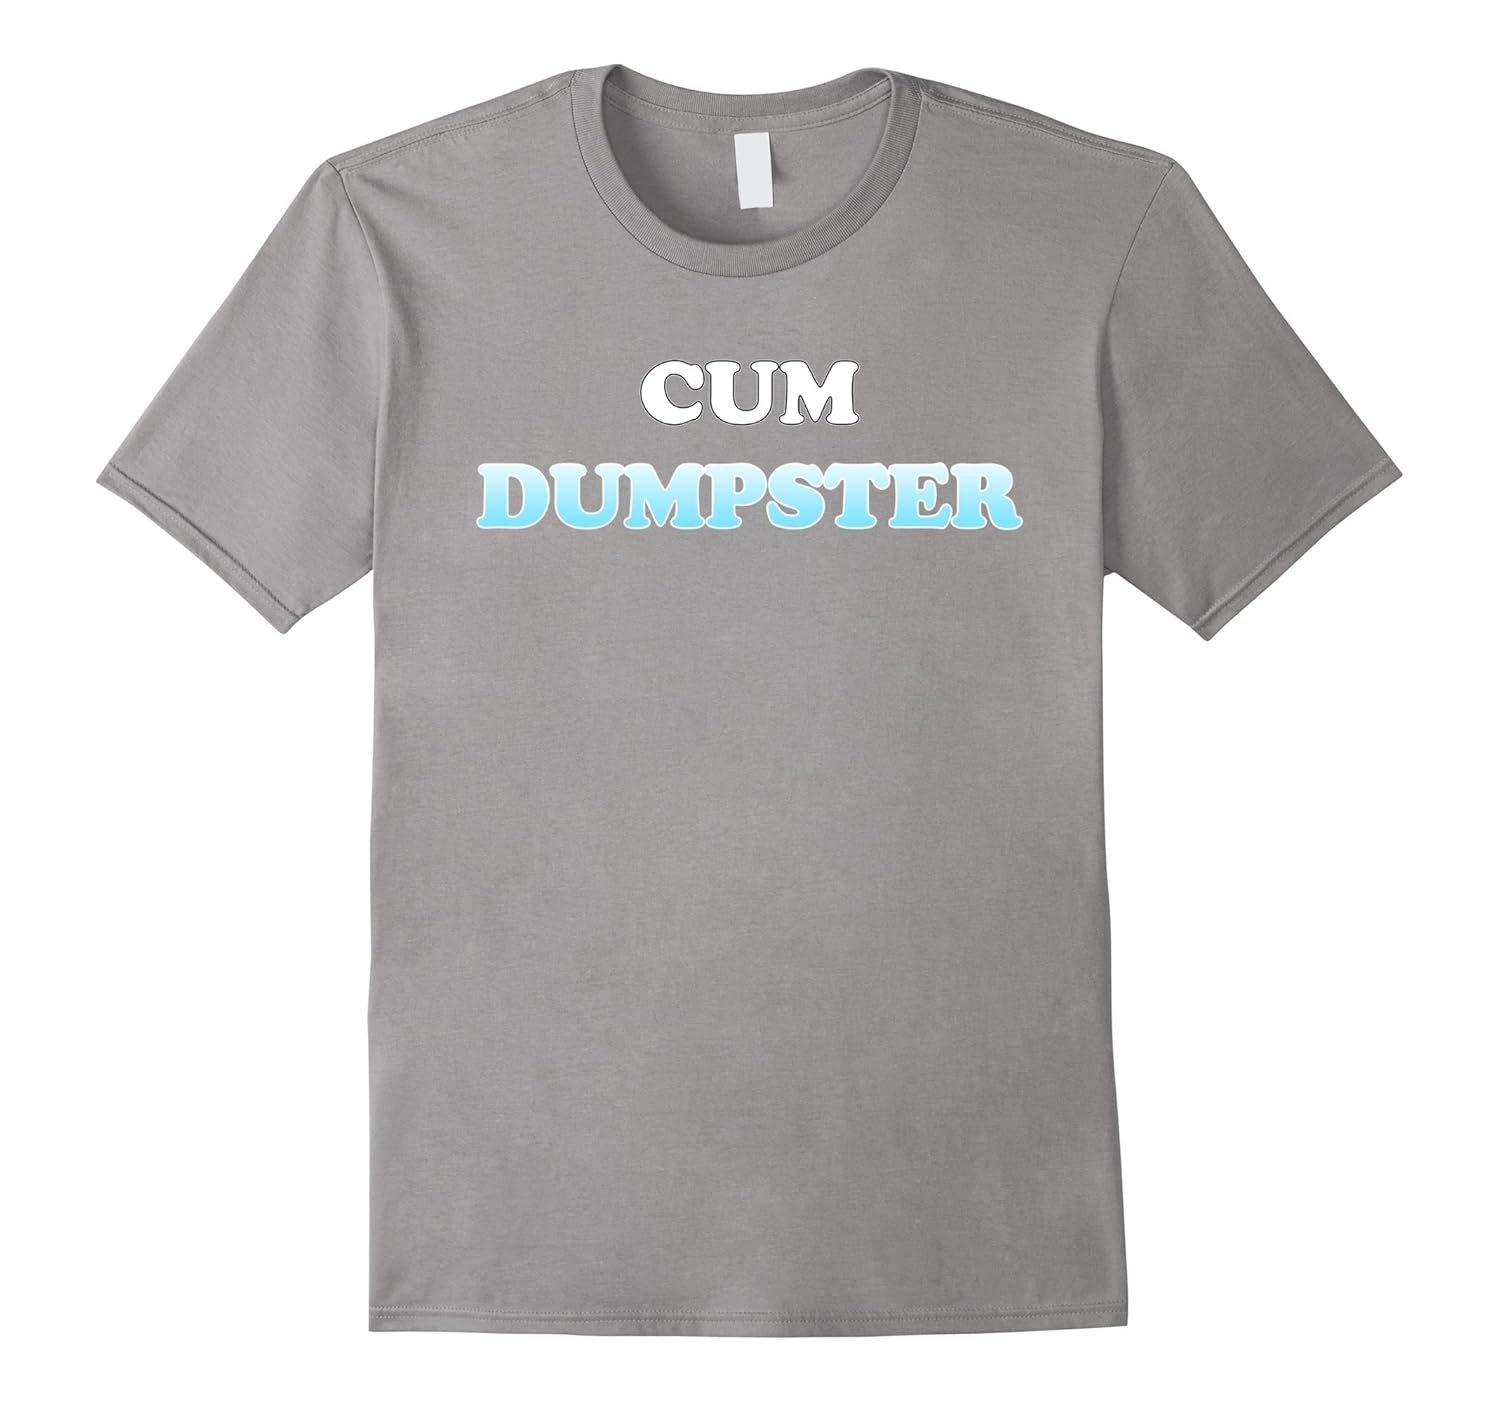 abbey abiola recommends Cum Dumpster T Shirt